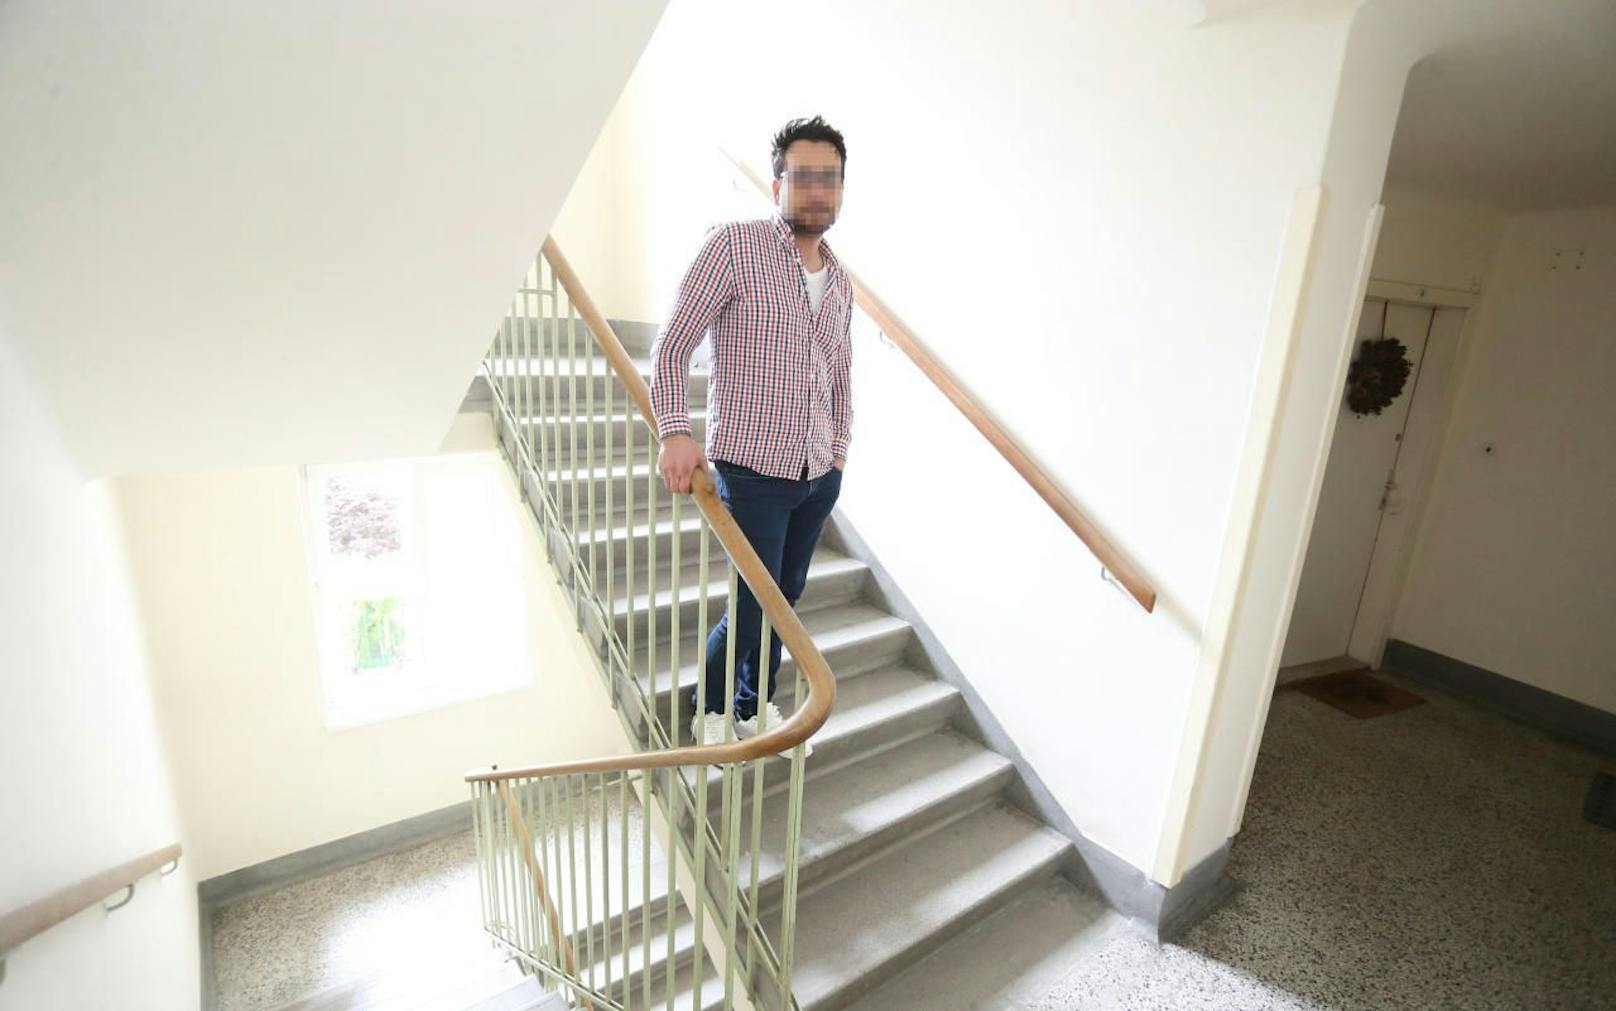 Für Epileptiker Hasan H. (38) stellen Stiegen eine zusätzliche Gefahr dar. Nun bat er Wiener Wohnen um eine Wohnung mit Lift oder im Erdgeschoss. Doch weil er die Anforderungen nicht erfüllt, heißt es hoffen auf die Wohnungskommission. 